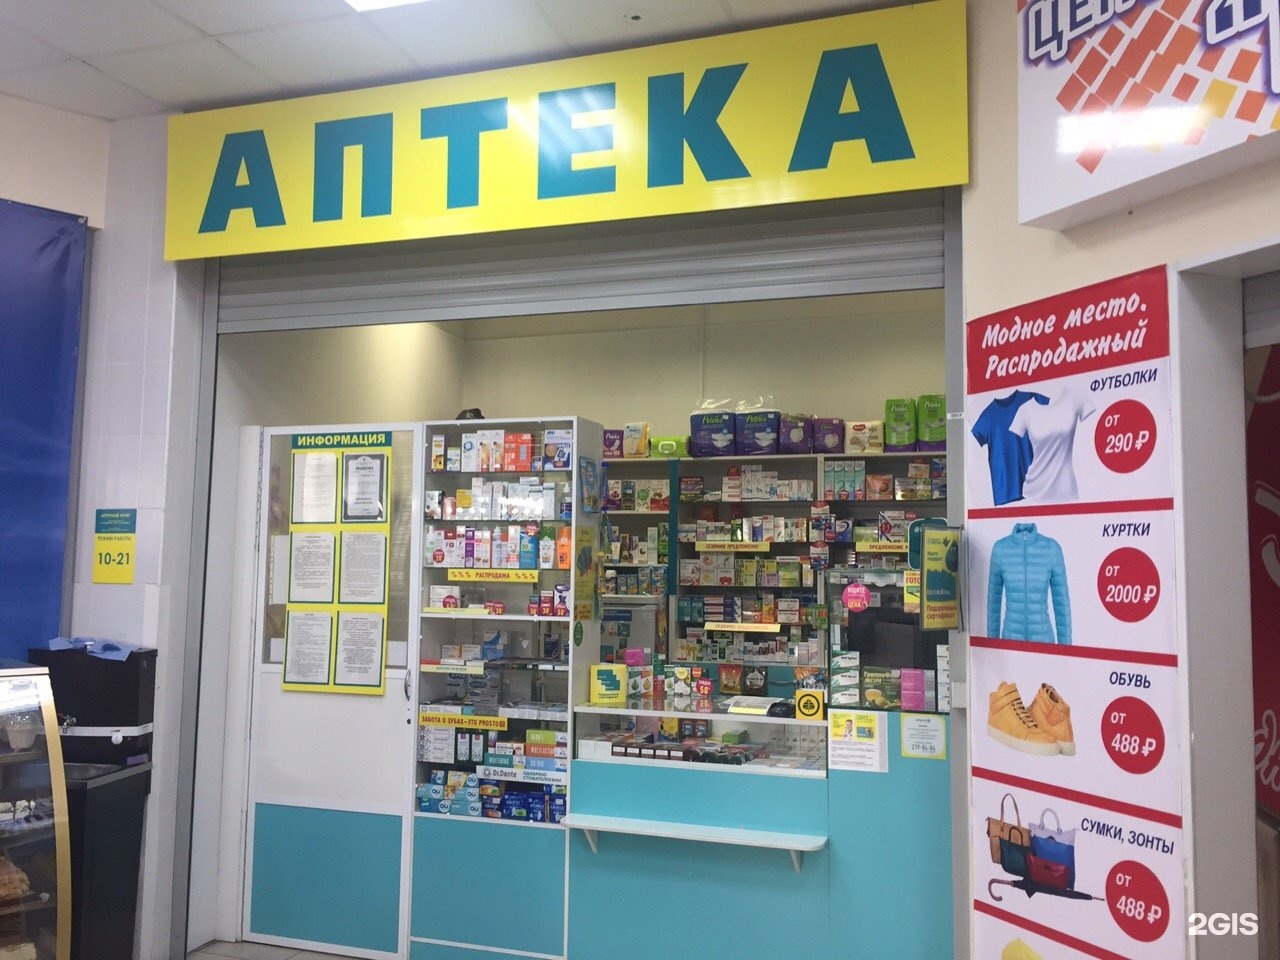 Хабаровская 66 Пермь Аптека Планета Здоровья